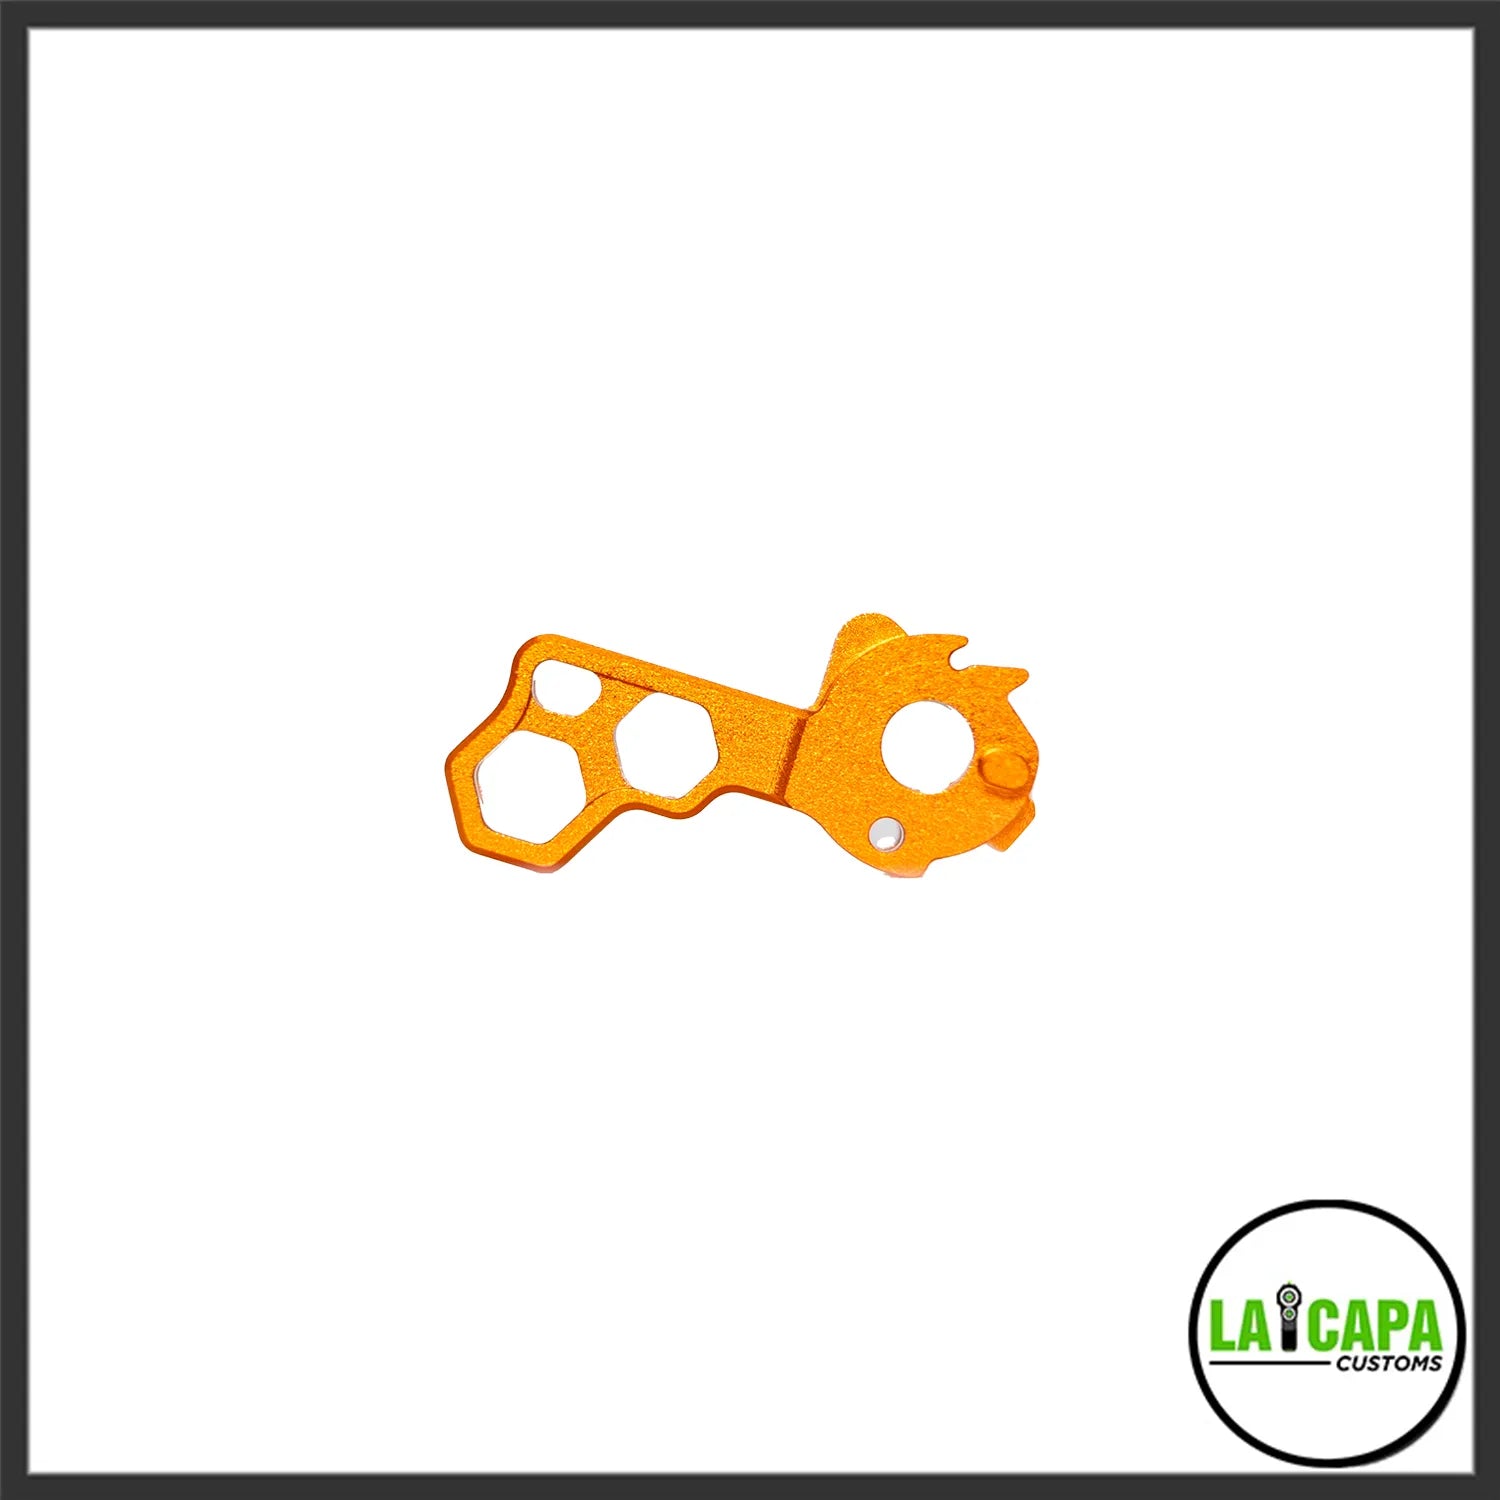 LA Capa Customs “HIVE” Duralumin Hammer for Hi Capa - Orange